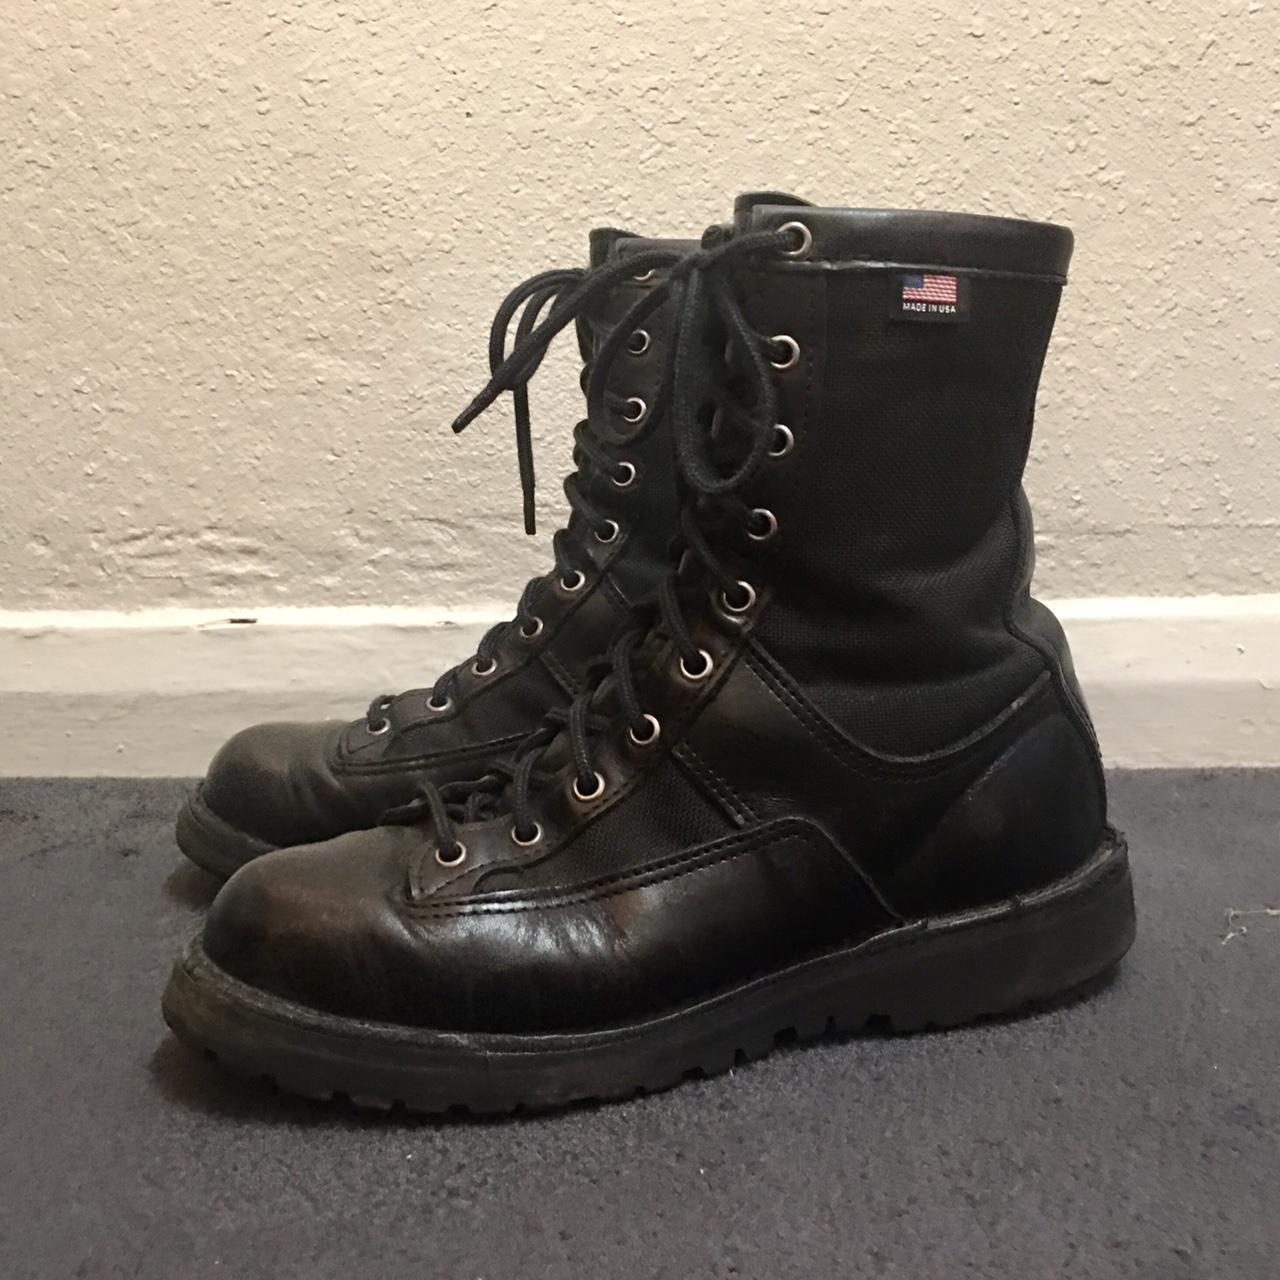 Danner Acadia Boots - 69210 Women's Size 9M 200G... - Depop